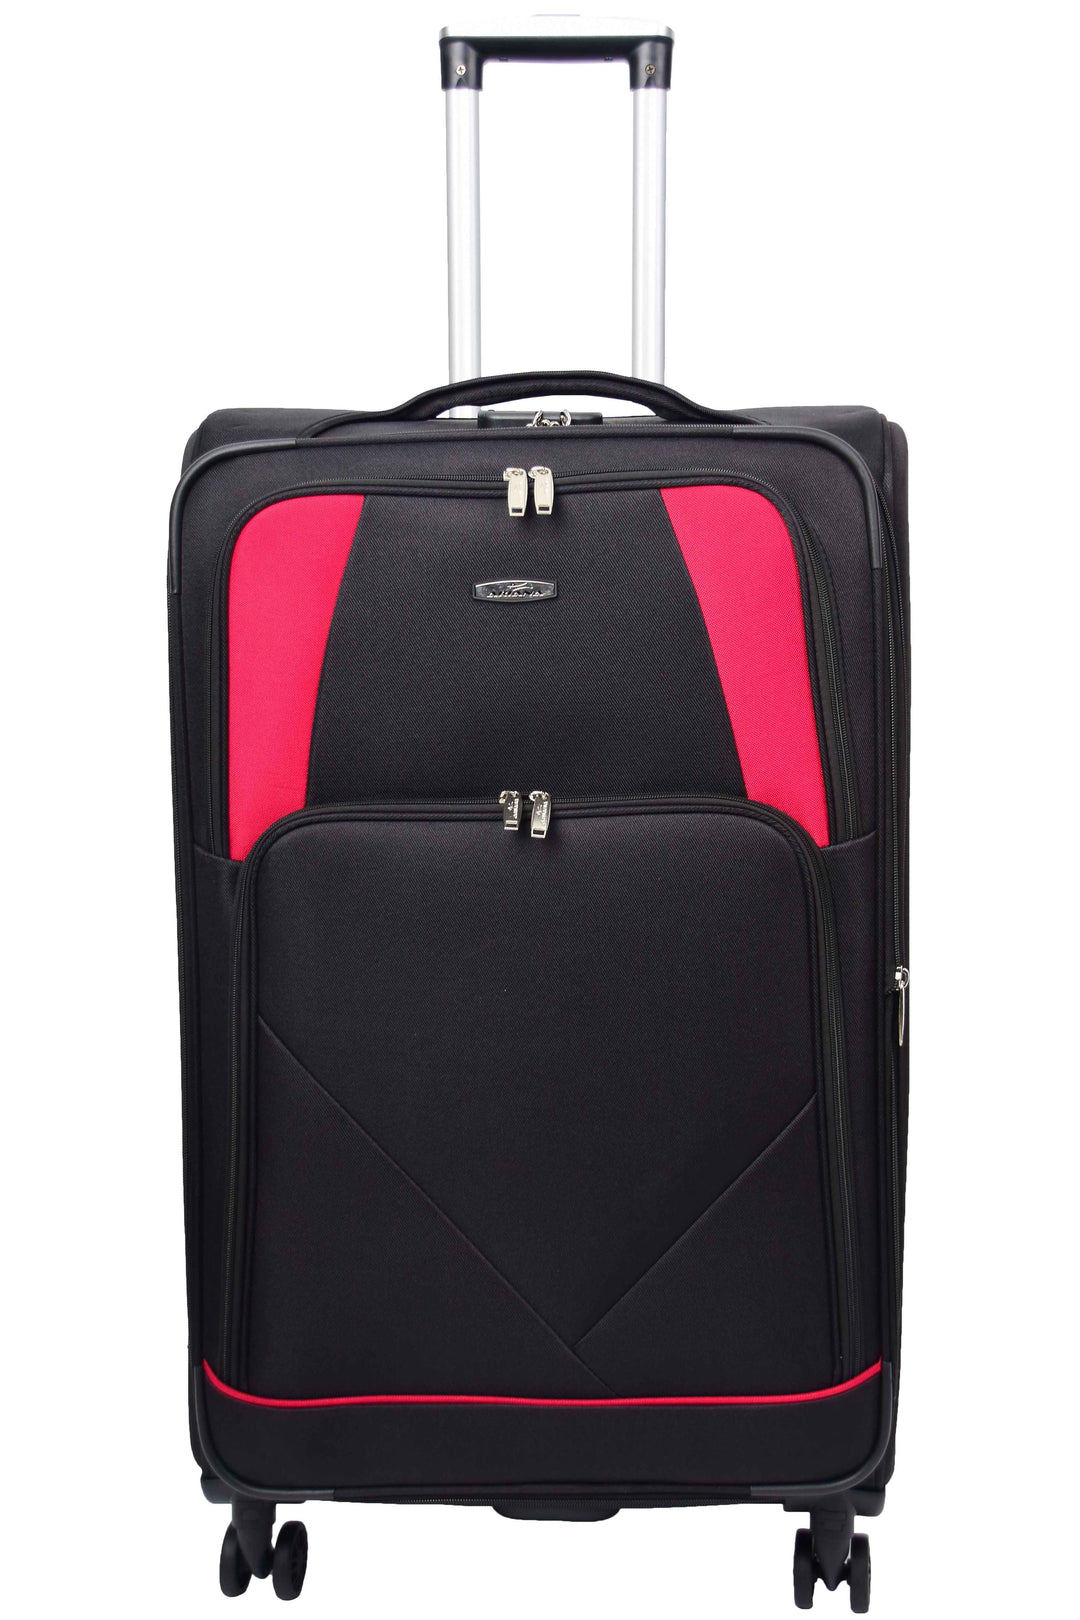 Guardian Lightweight Suitcase 7